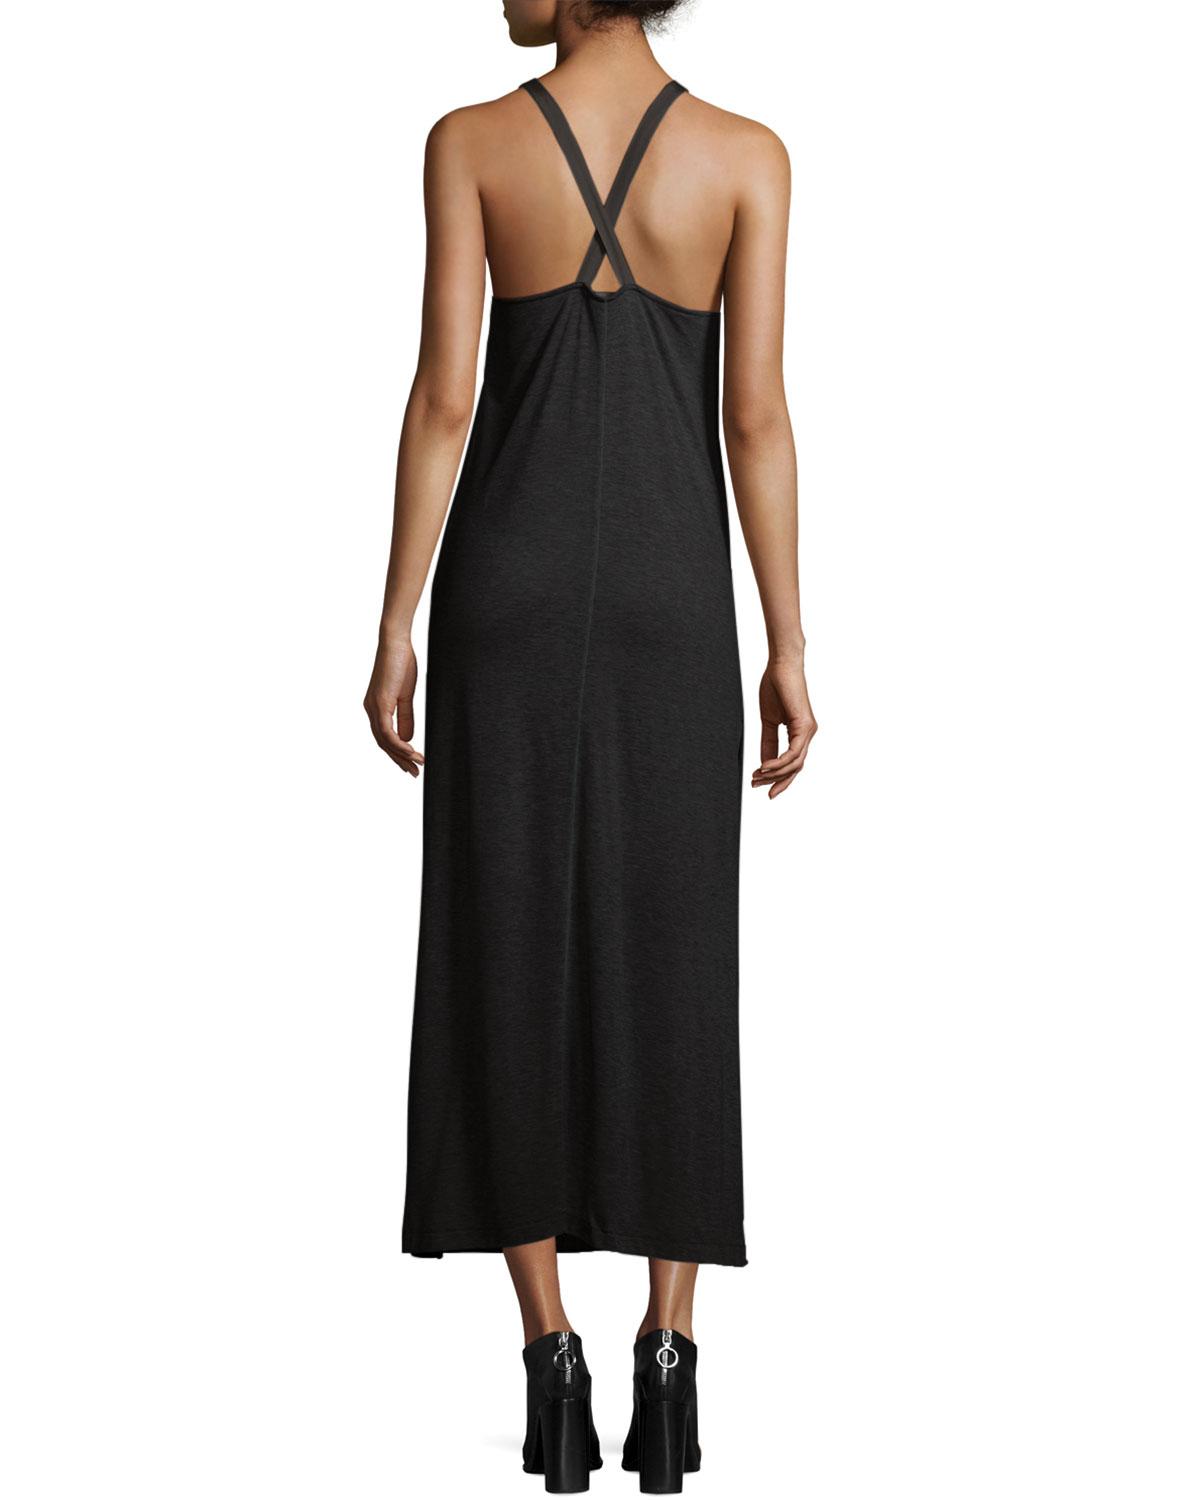 Lyst - Rag & Bone Malibu Sleeveless Knit Maxi Dress in Black